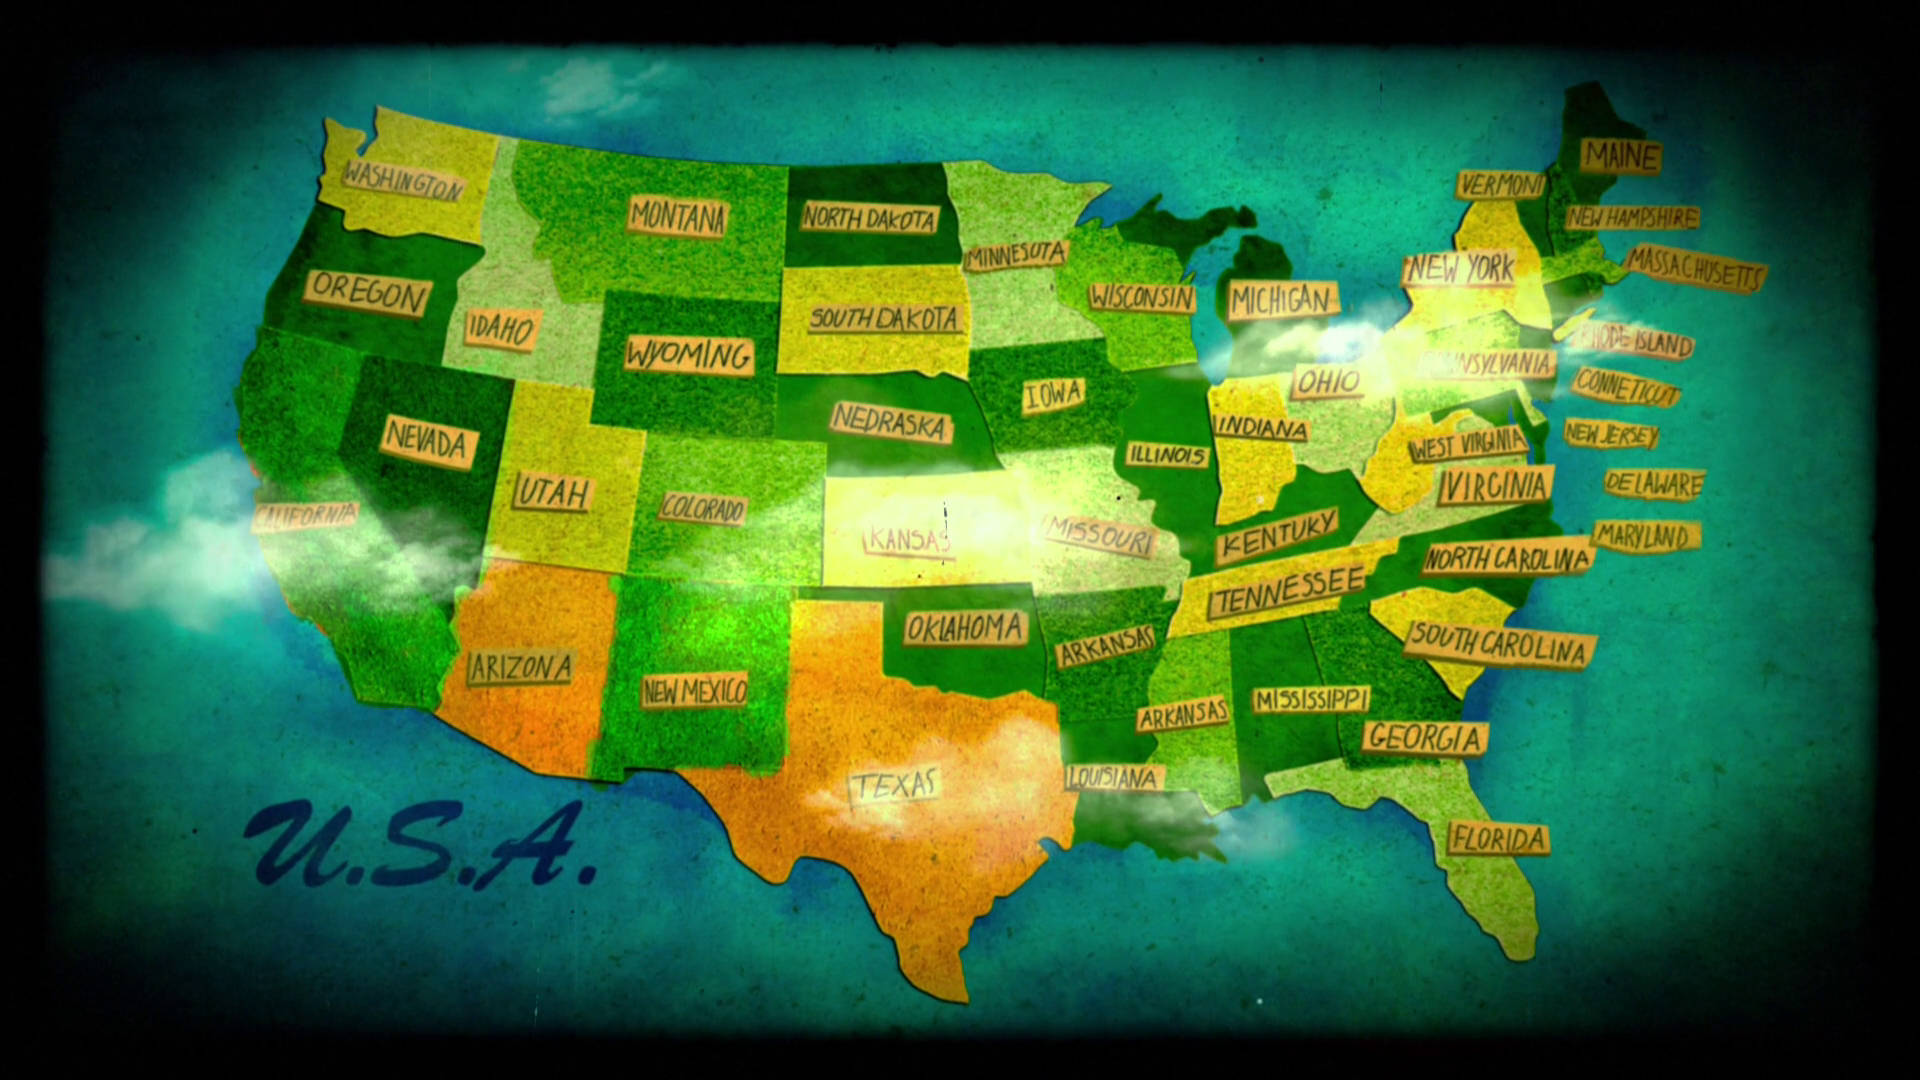 Einekarte Der Vereinigten Staaten Mit Den Bundesstaaten Darauf Geschrieben. Wallpaper